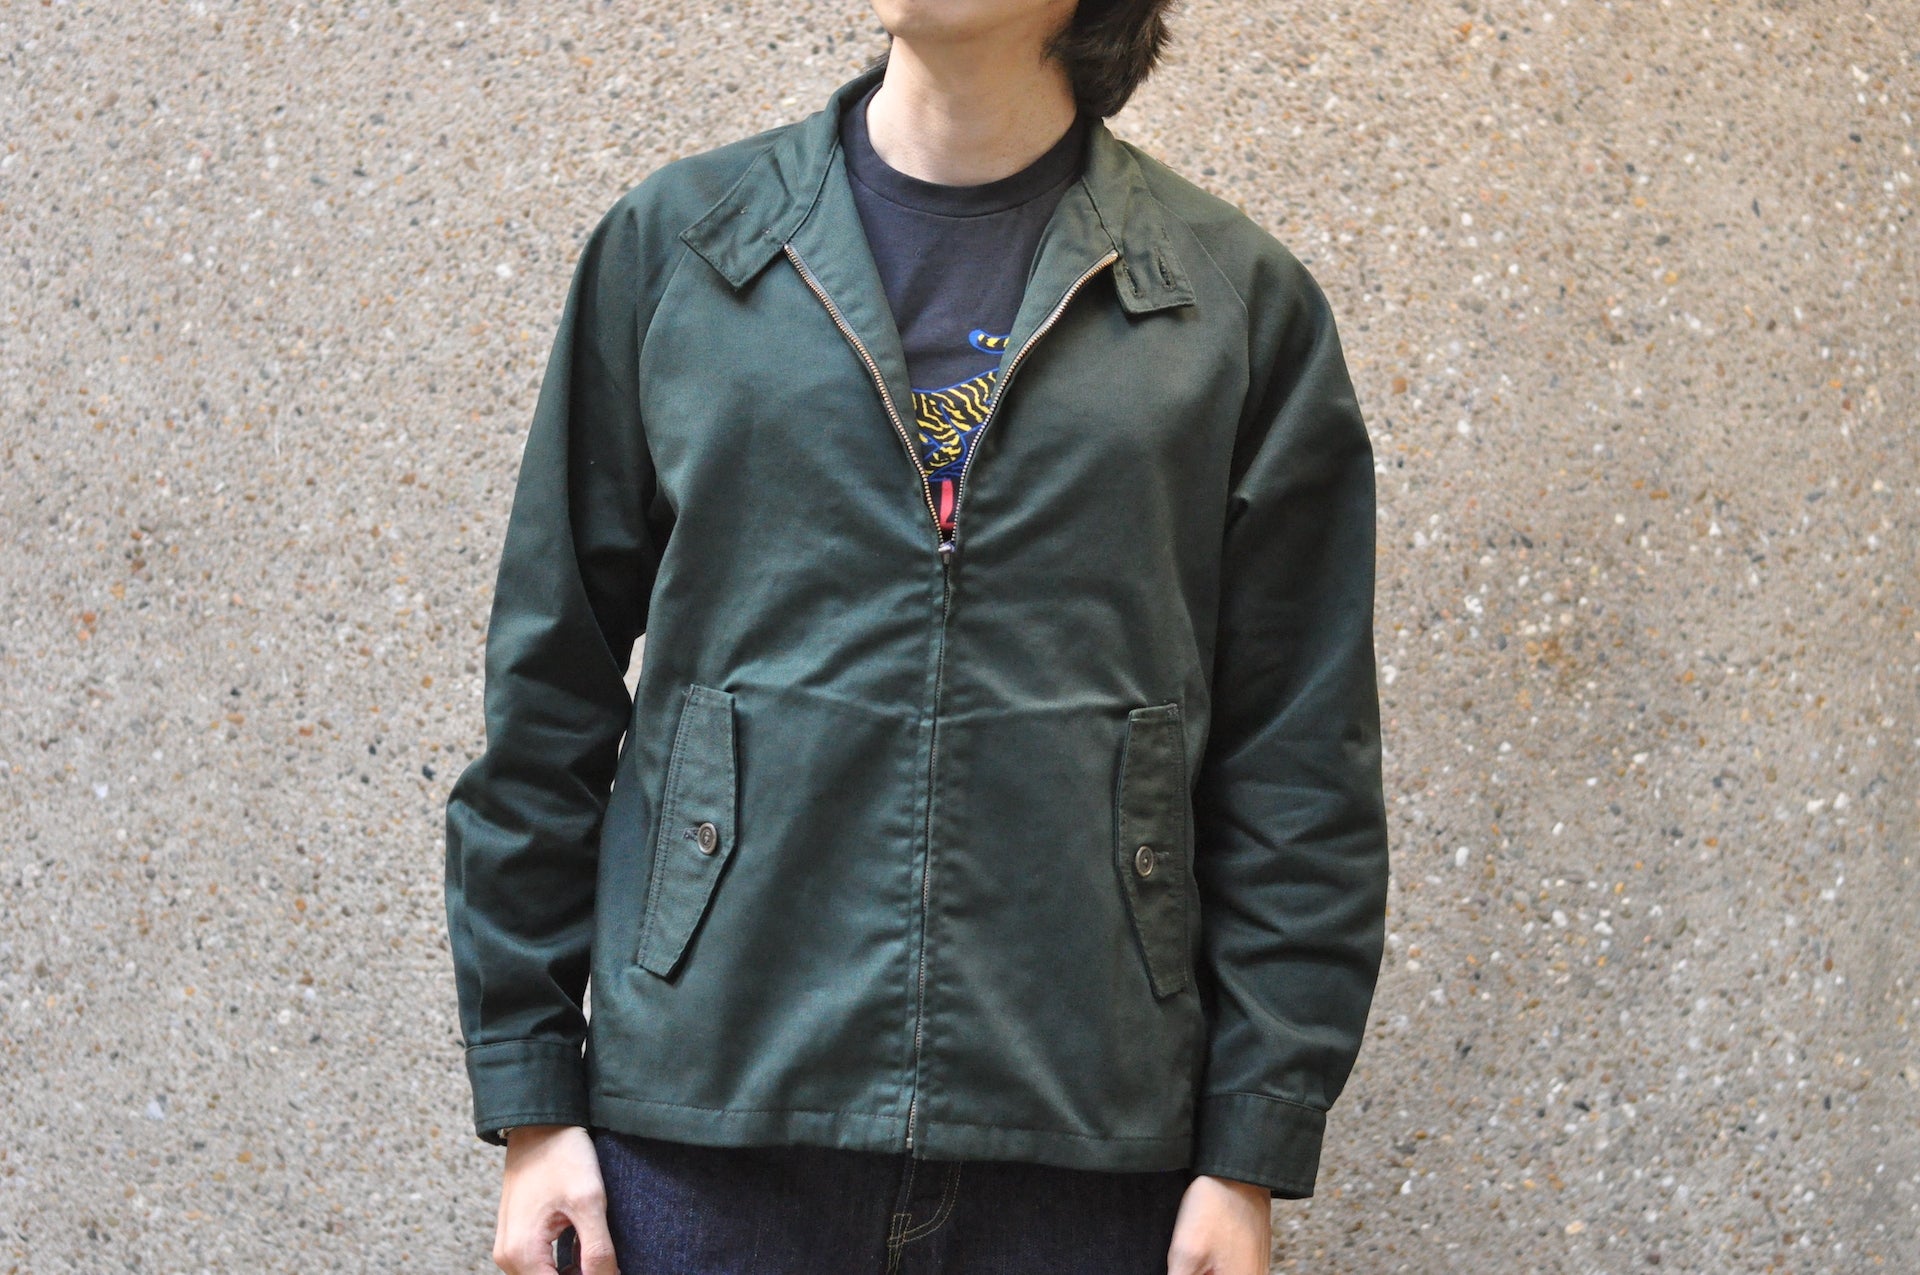 Japan Blue Cotton/Tetron Twill Harrington Work Jacket (Green)